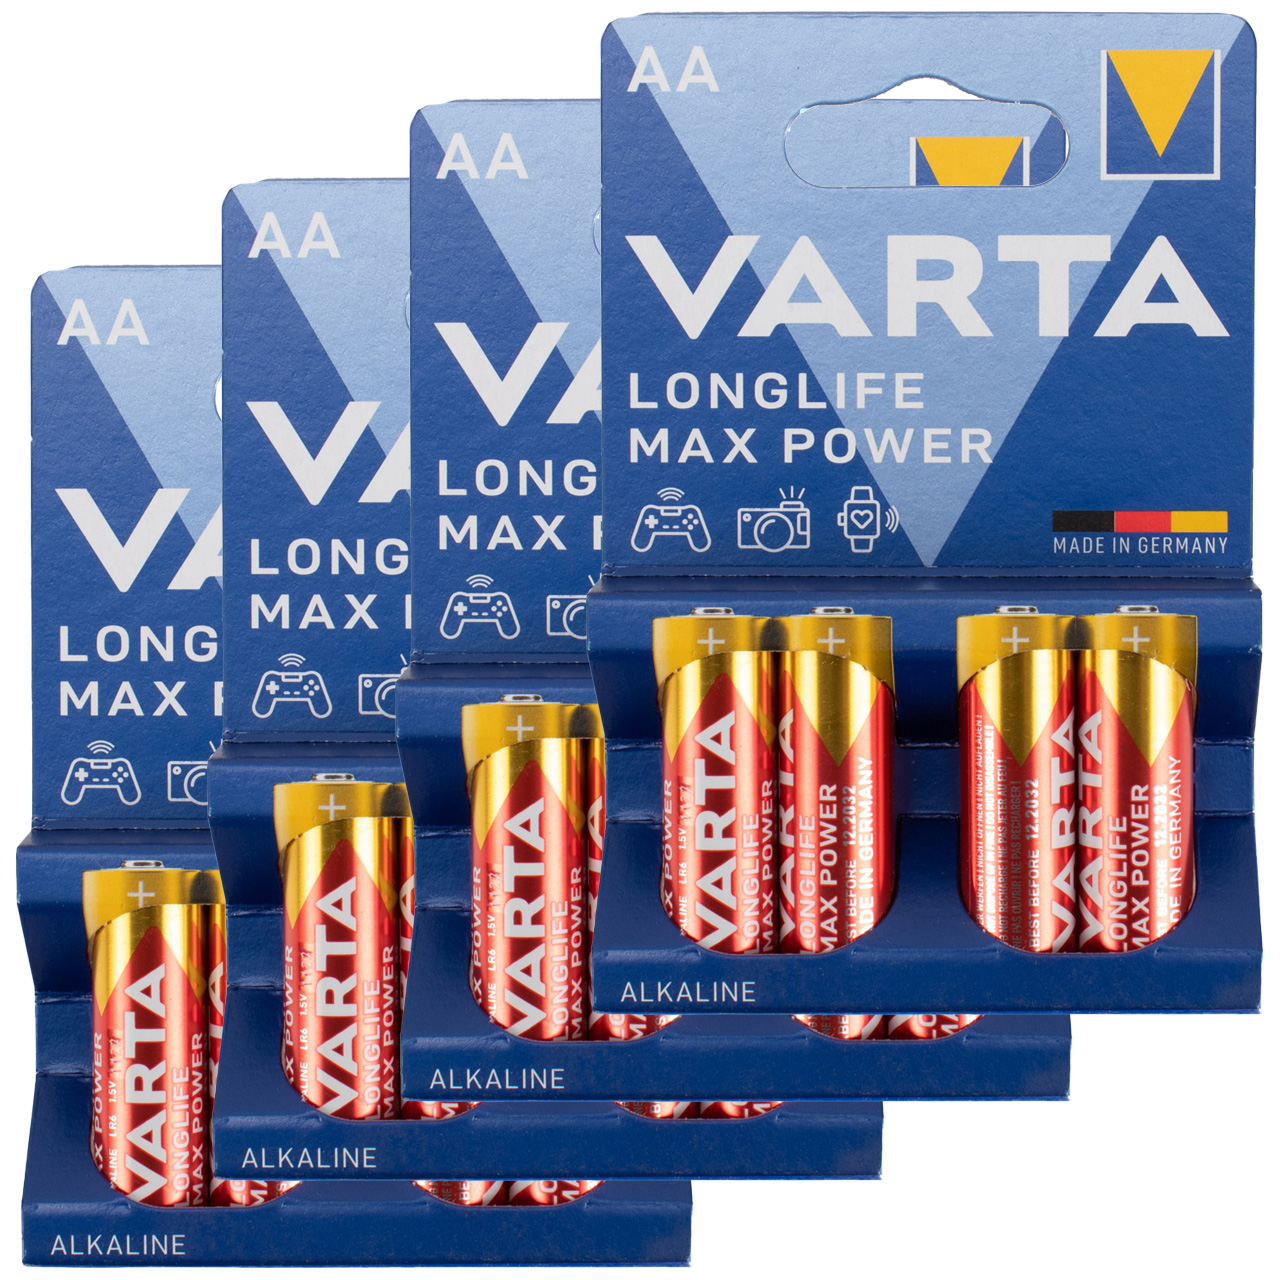 16x VARTA LONGLIFE MAX POWER ALKALINE Batterie AA MIGNON 4706 LR6 MN1500 1,5V